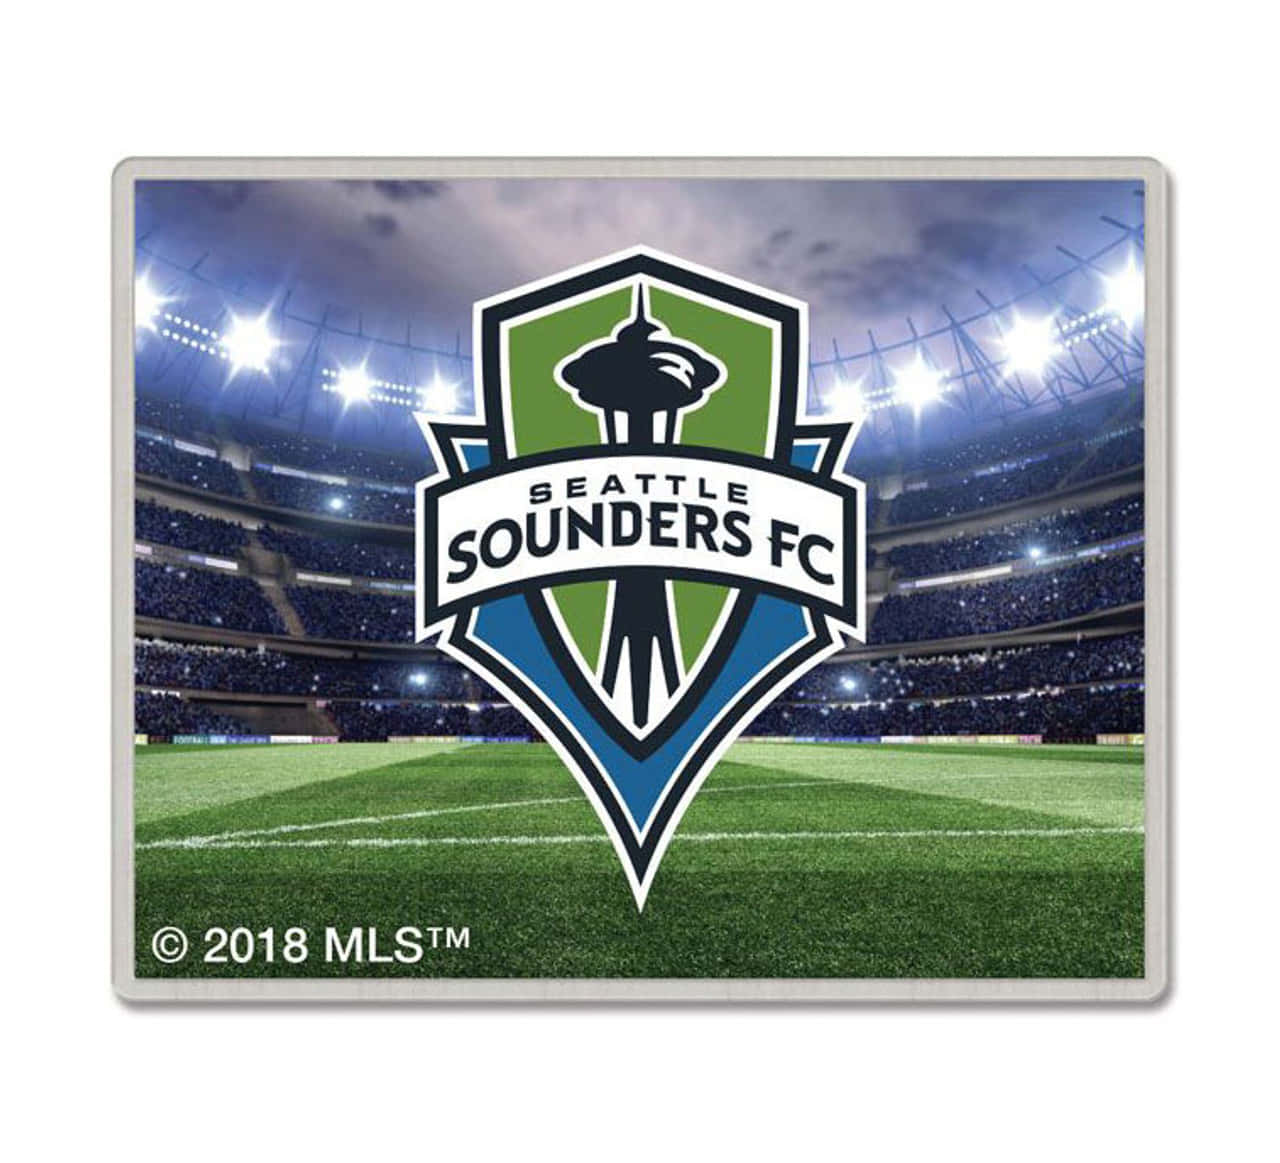 Seattlesounders Fc, Dominanza Nel Calcio Professionistico. Sfondo